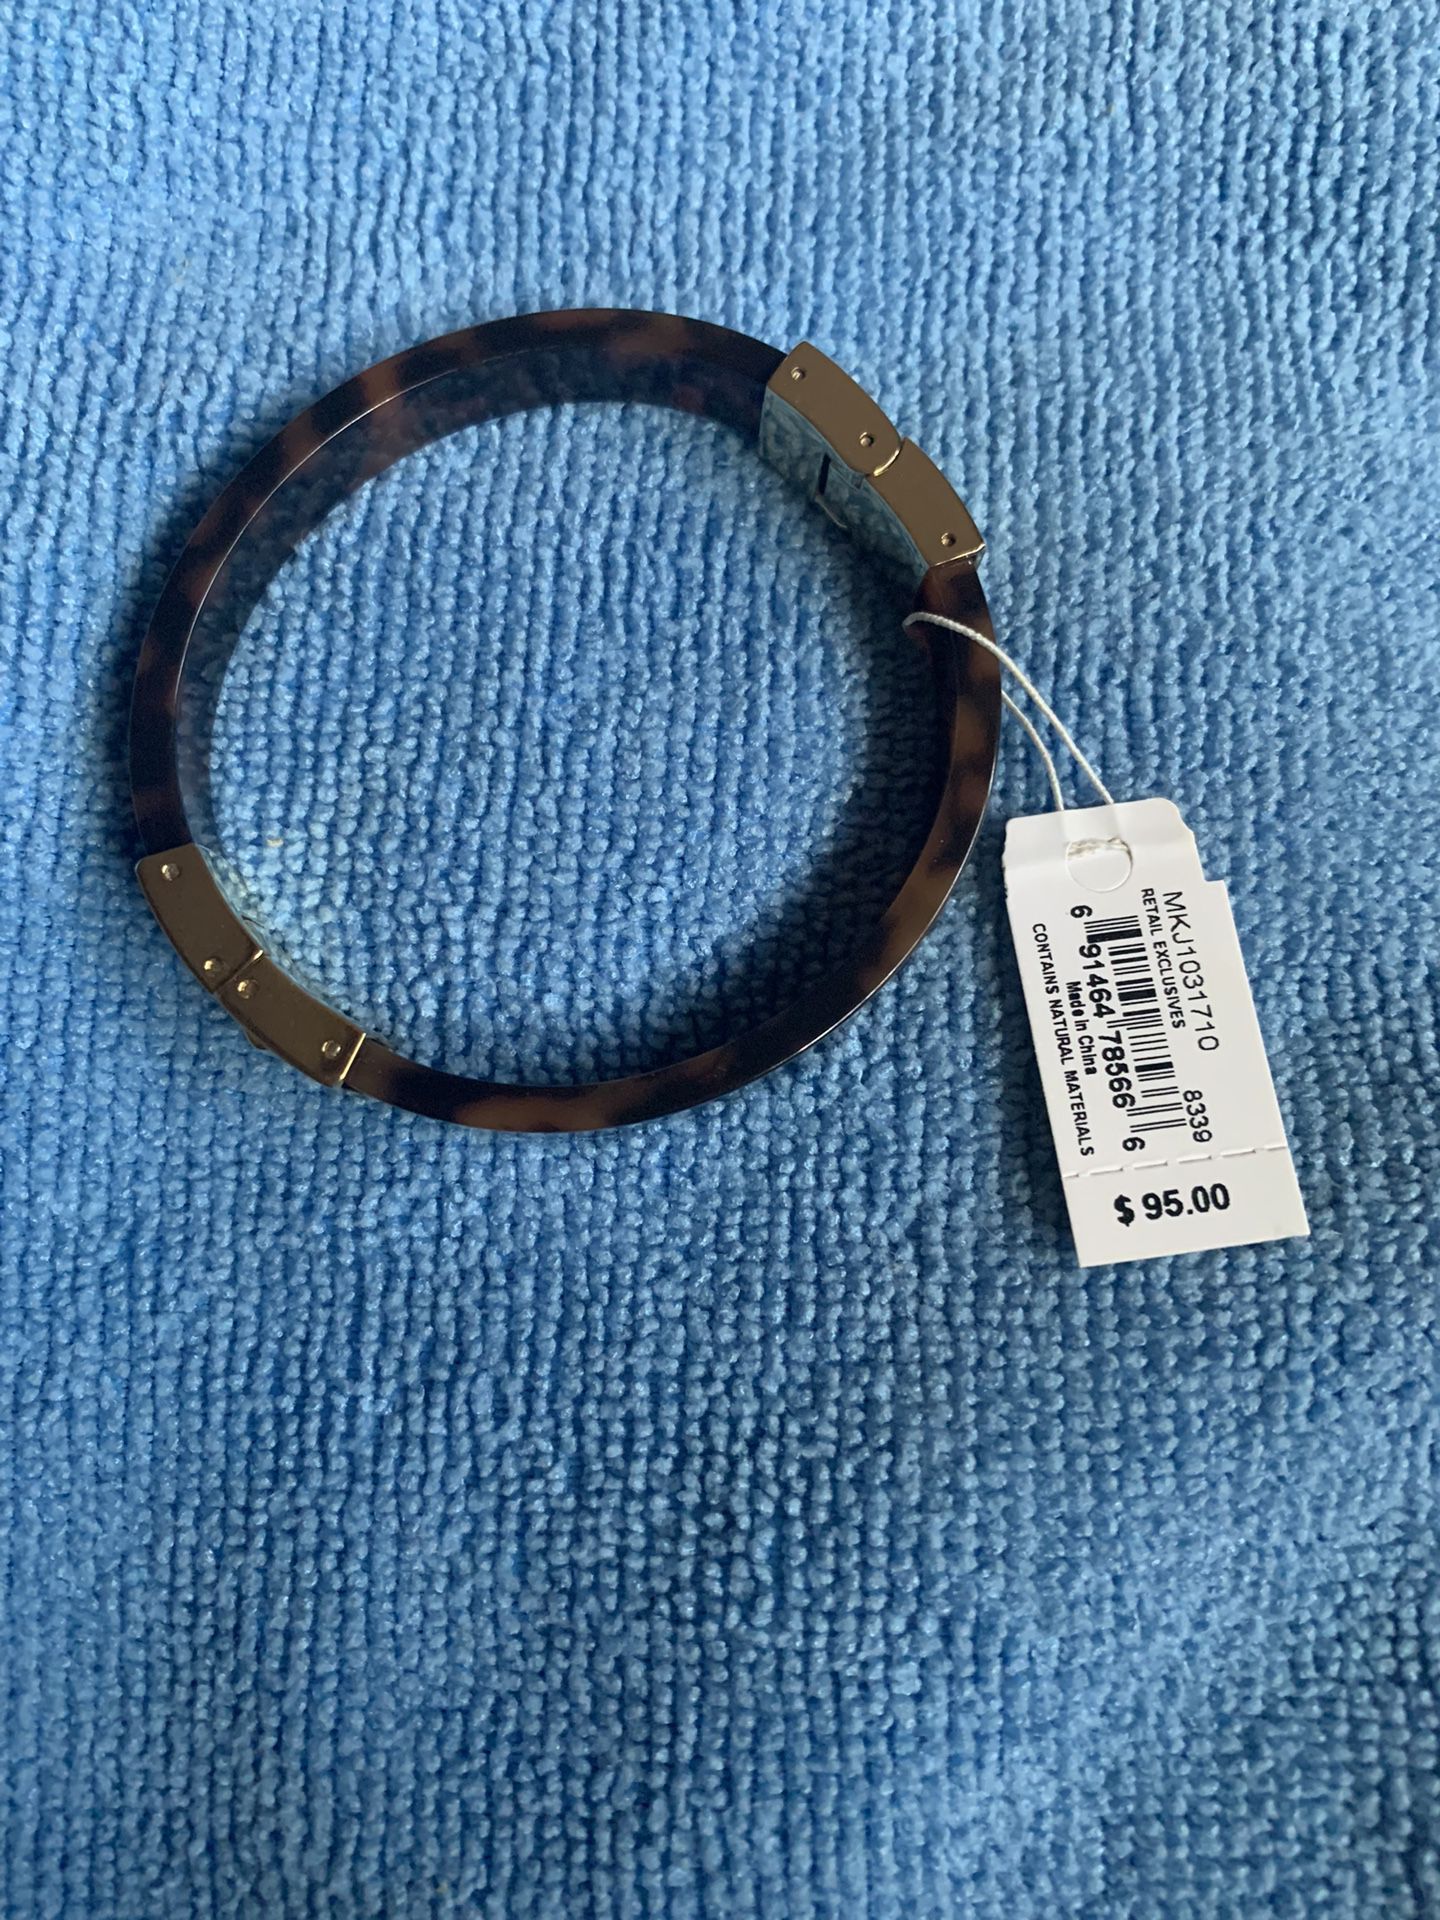 Michael Kors Bracelet for Sale in Garner, NC - OfferUp